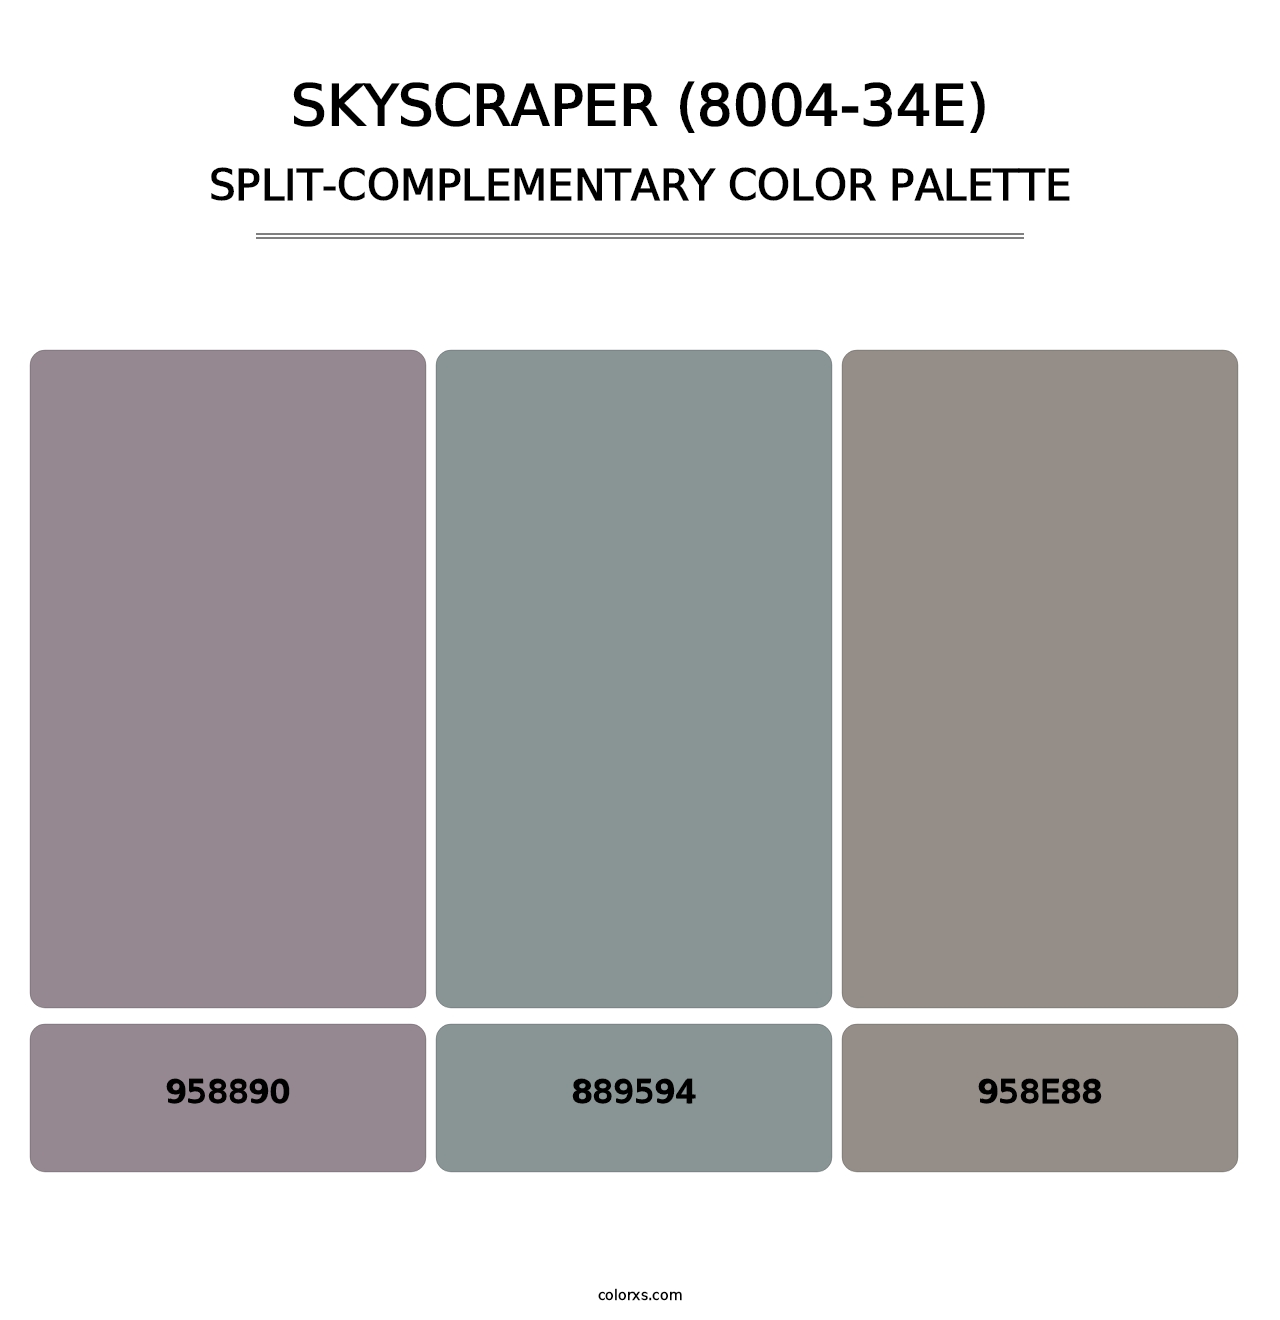 Skyscraper (8004-34E) - Split-Complementary Color Palette